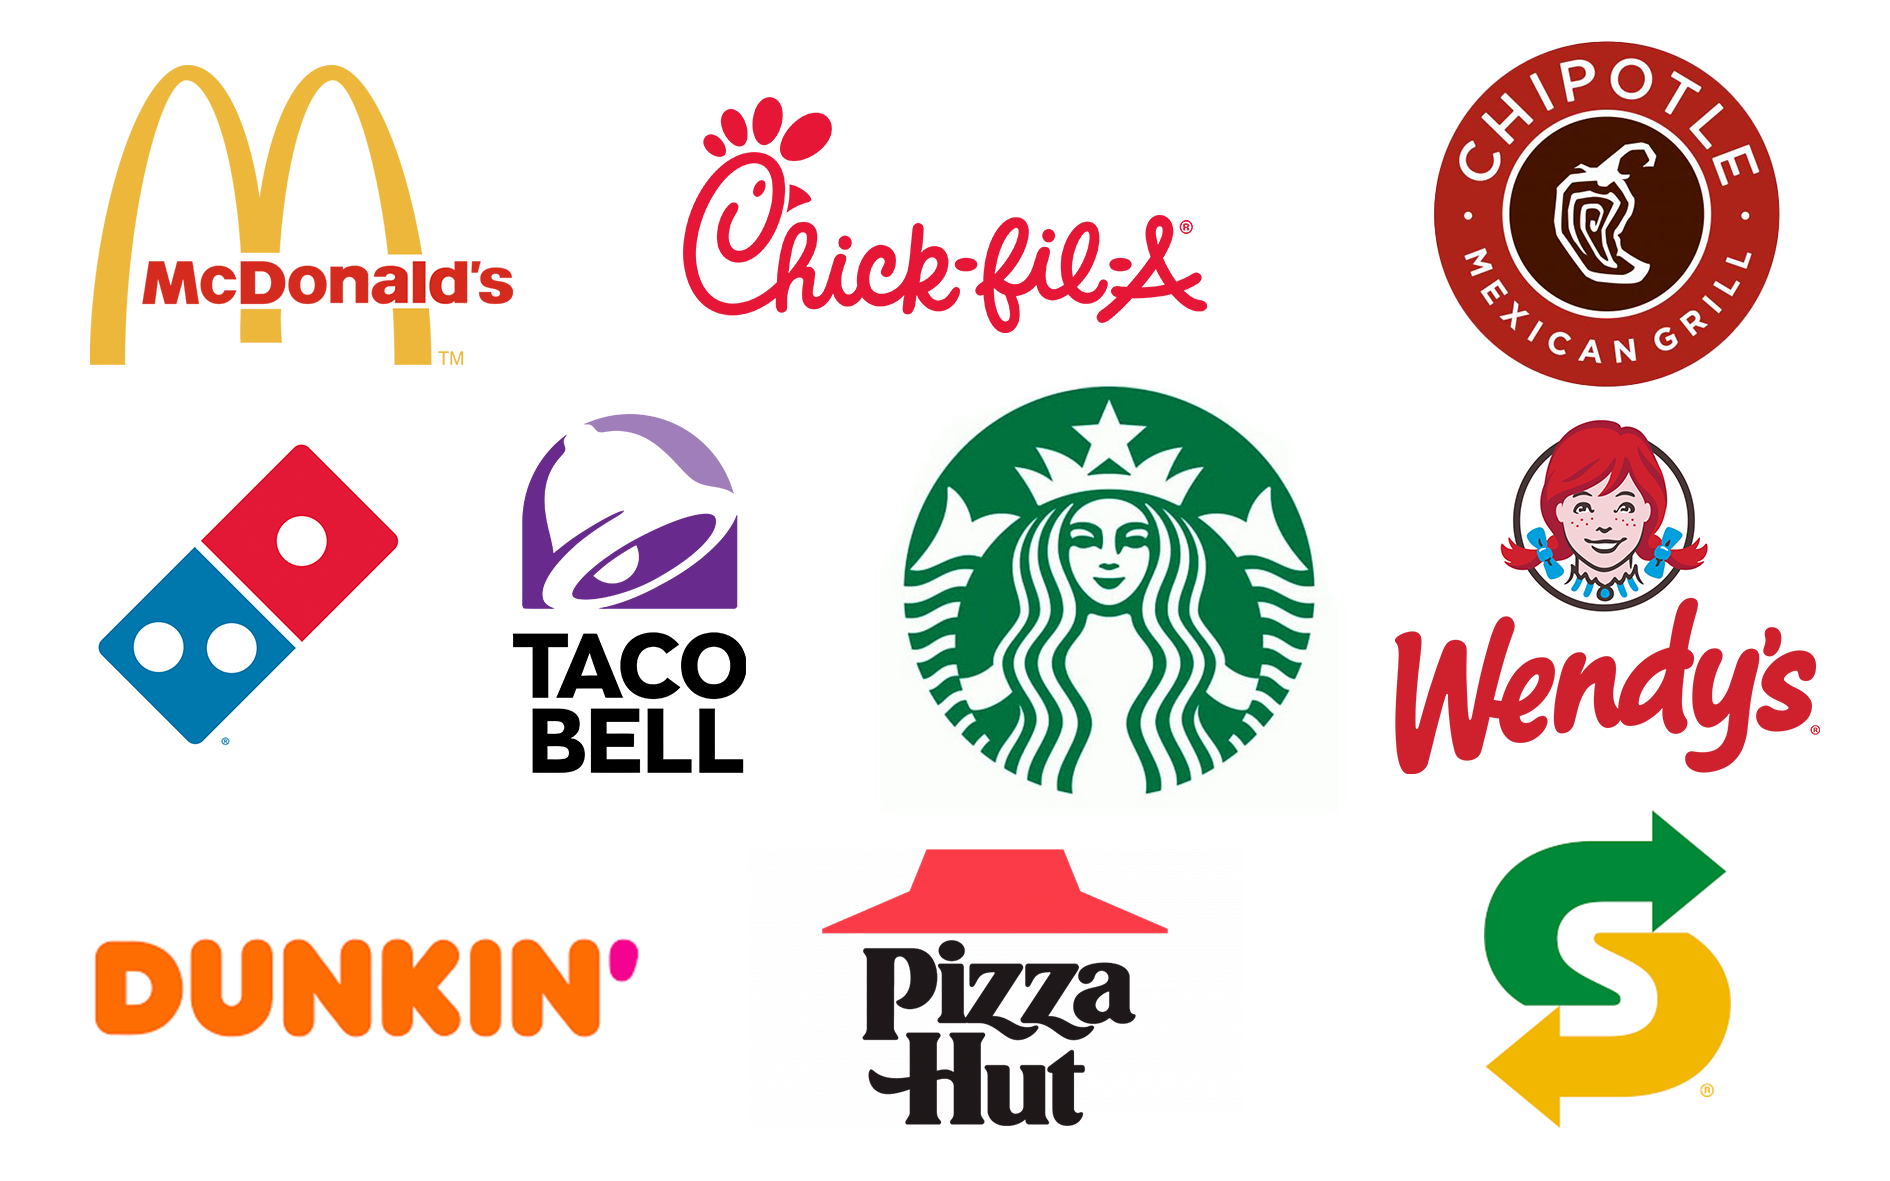 Top 10 restaurant chains